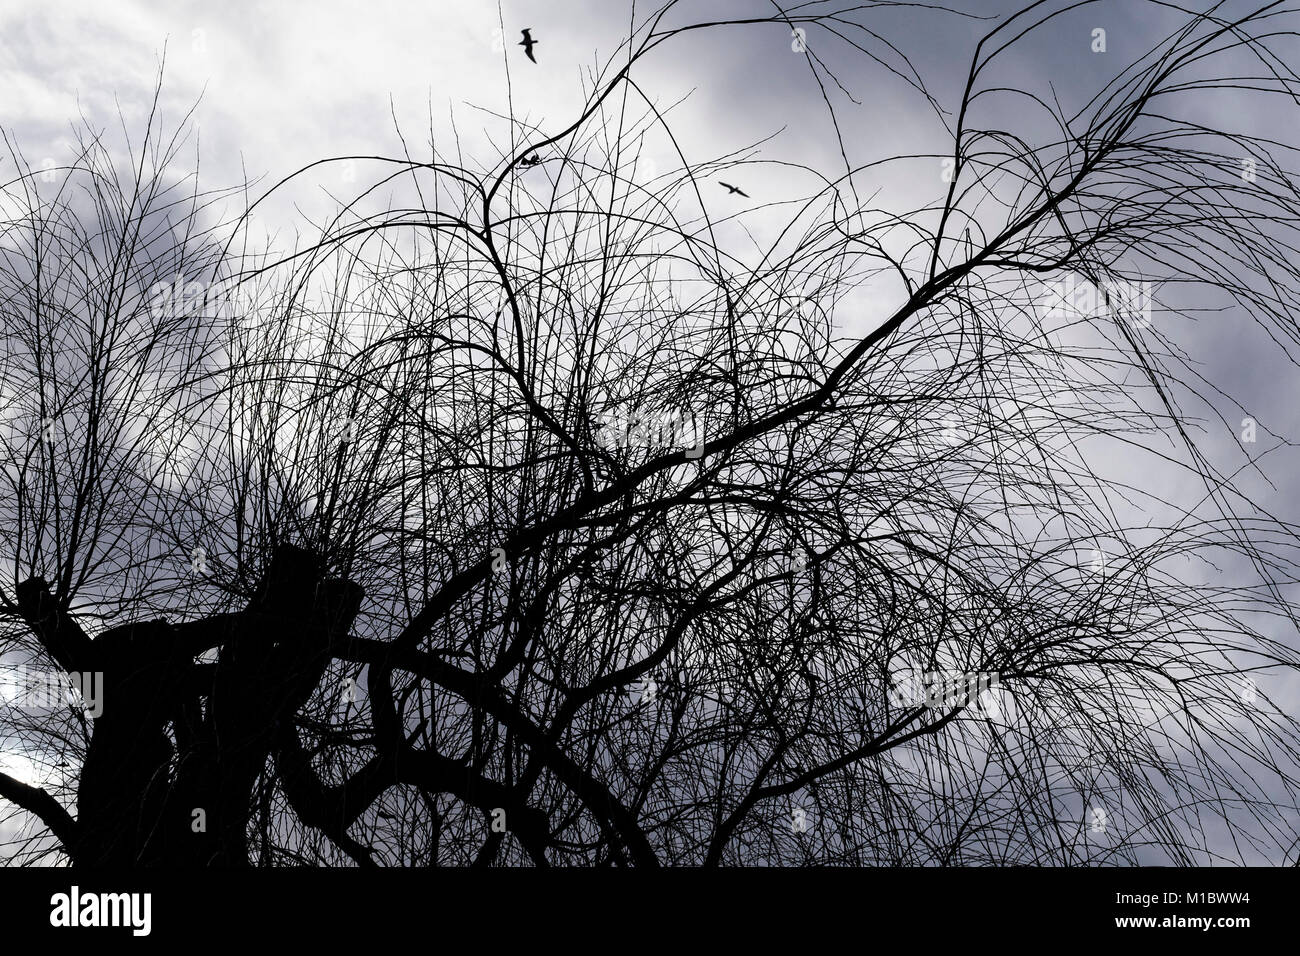 Rami e ramoscelli di alberi pollarded sillhouetted contro un cielo grigio. Foto Stock